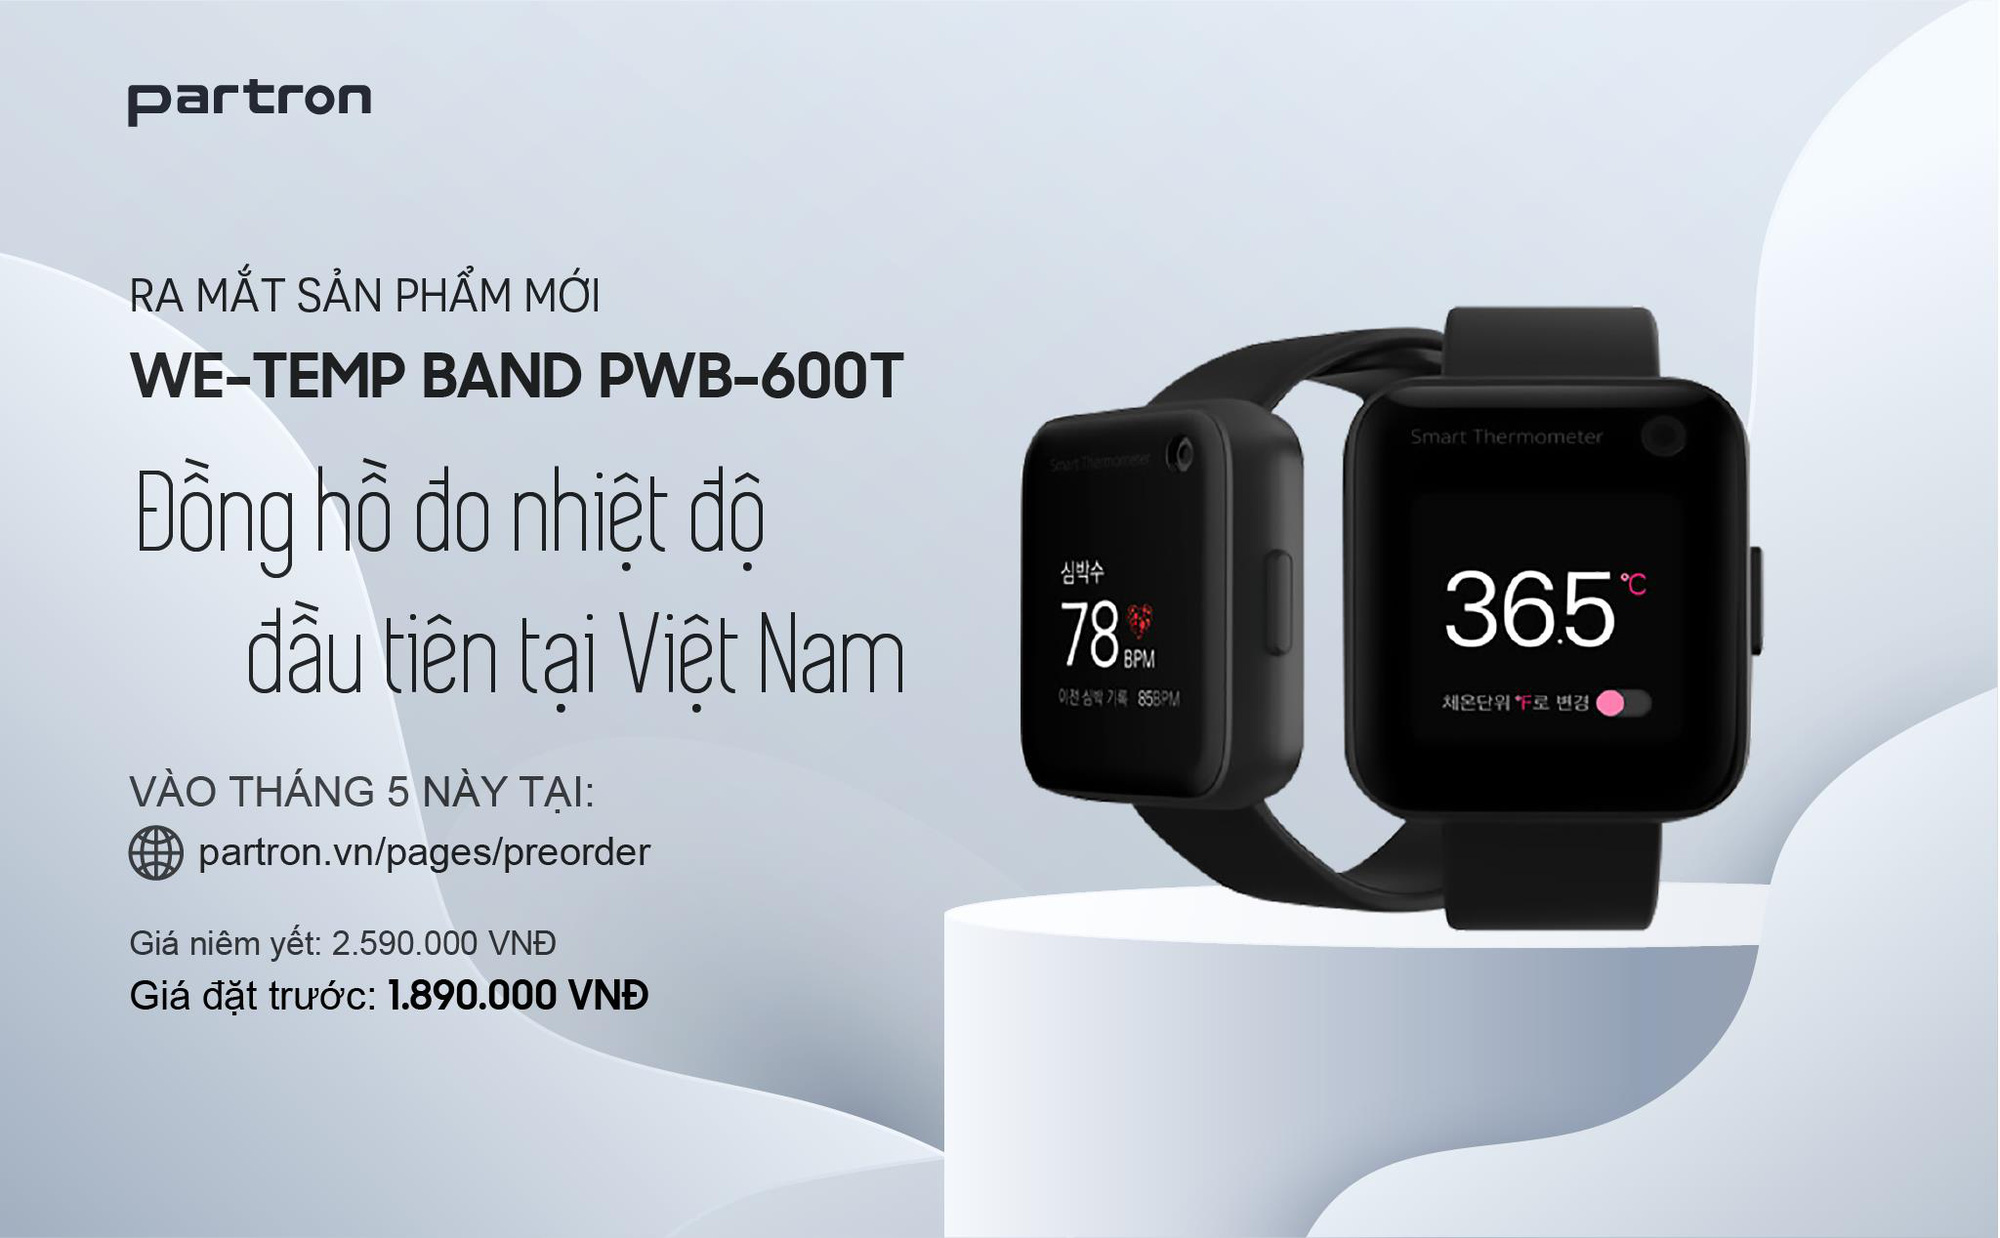 Partron ra mắt hai mẫu đồng hồ thông minh Urban HR và We-temp Band, Made in Việt Nam, có đo nhiệt độ cơ thể giá chỉ từ 1.290.000 đ - Ảnh 5.